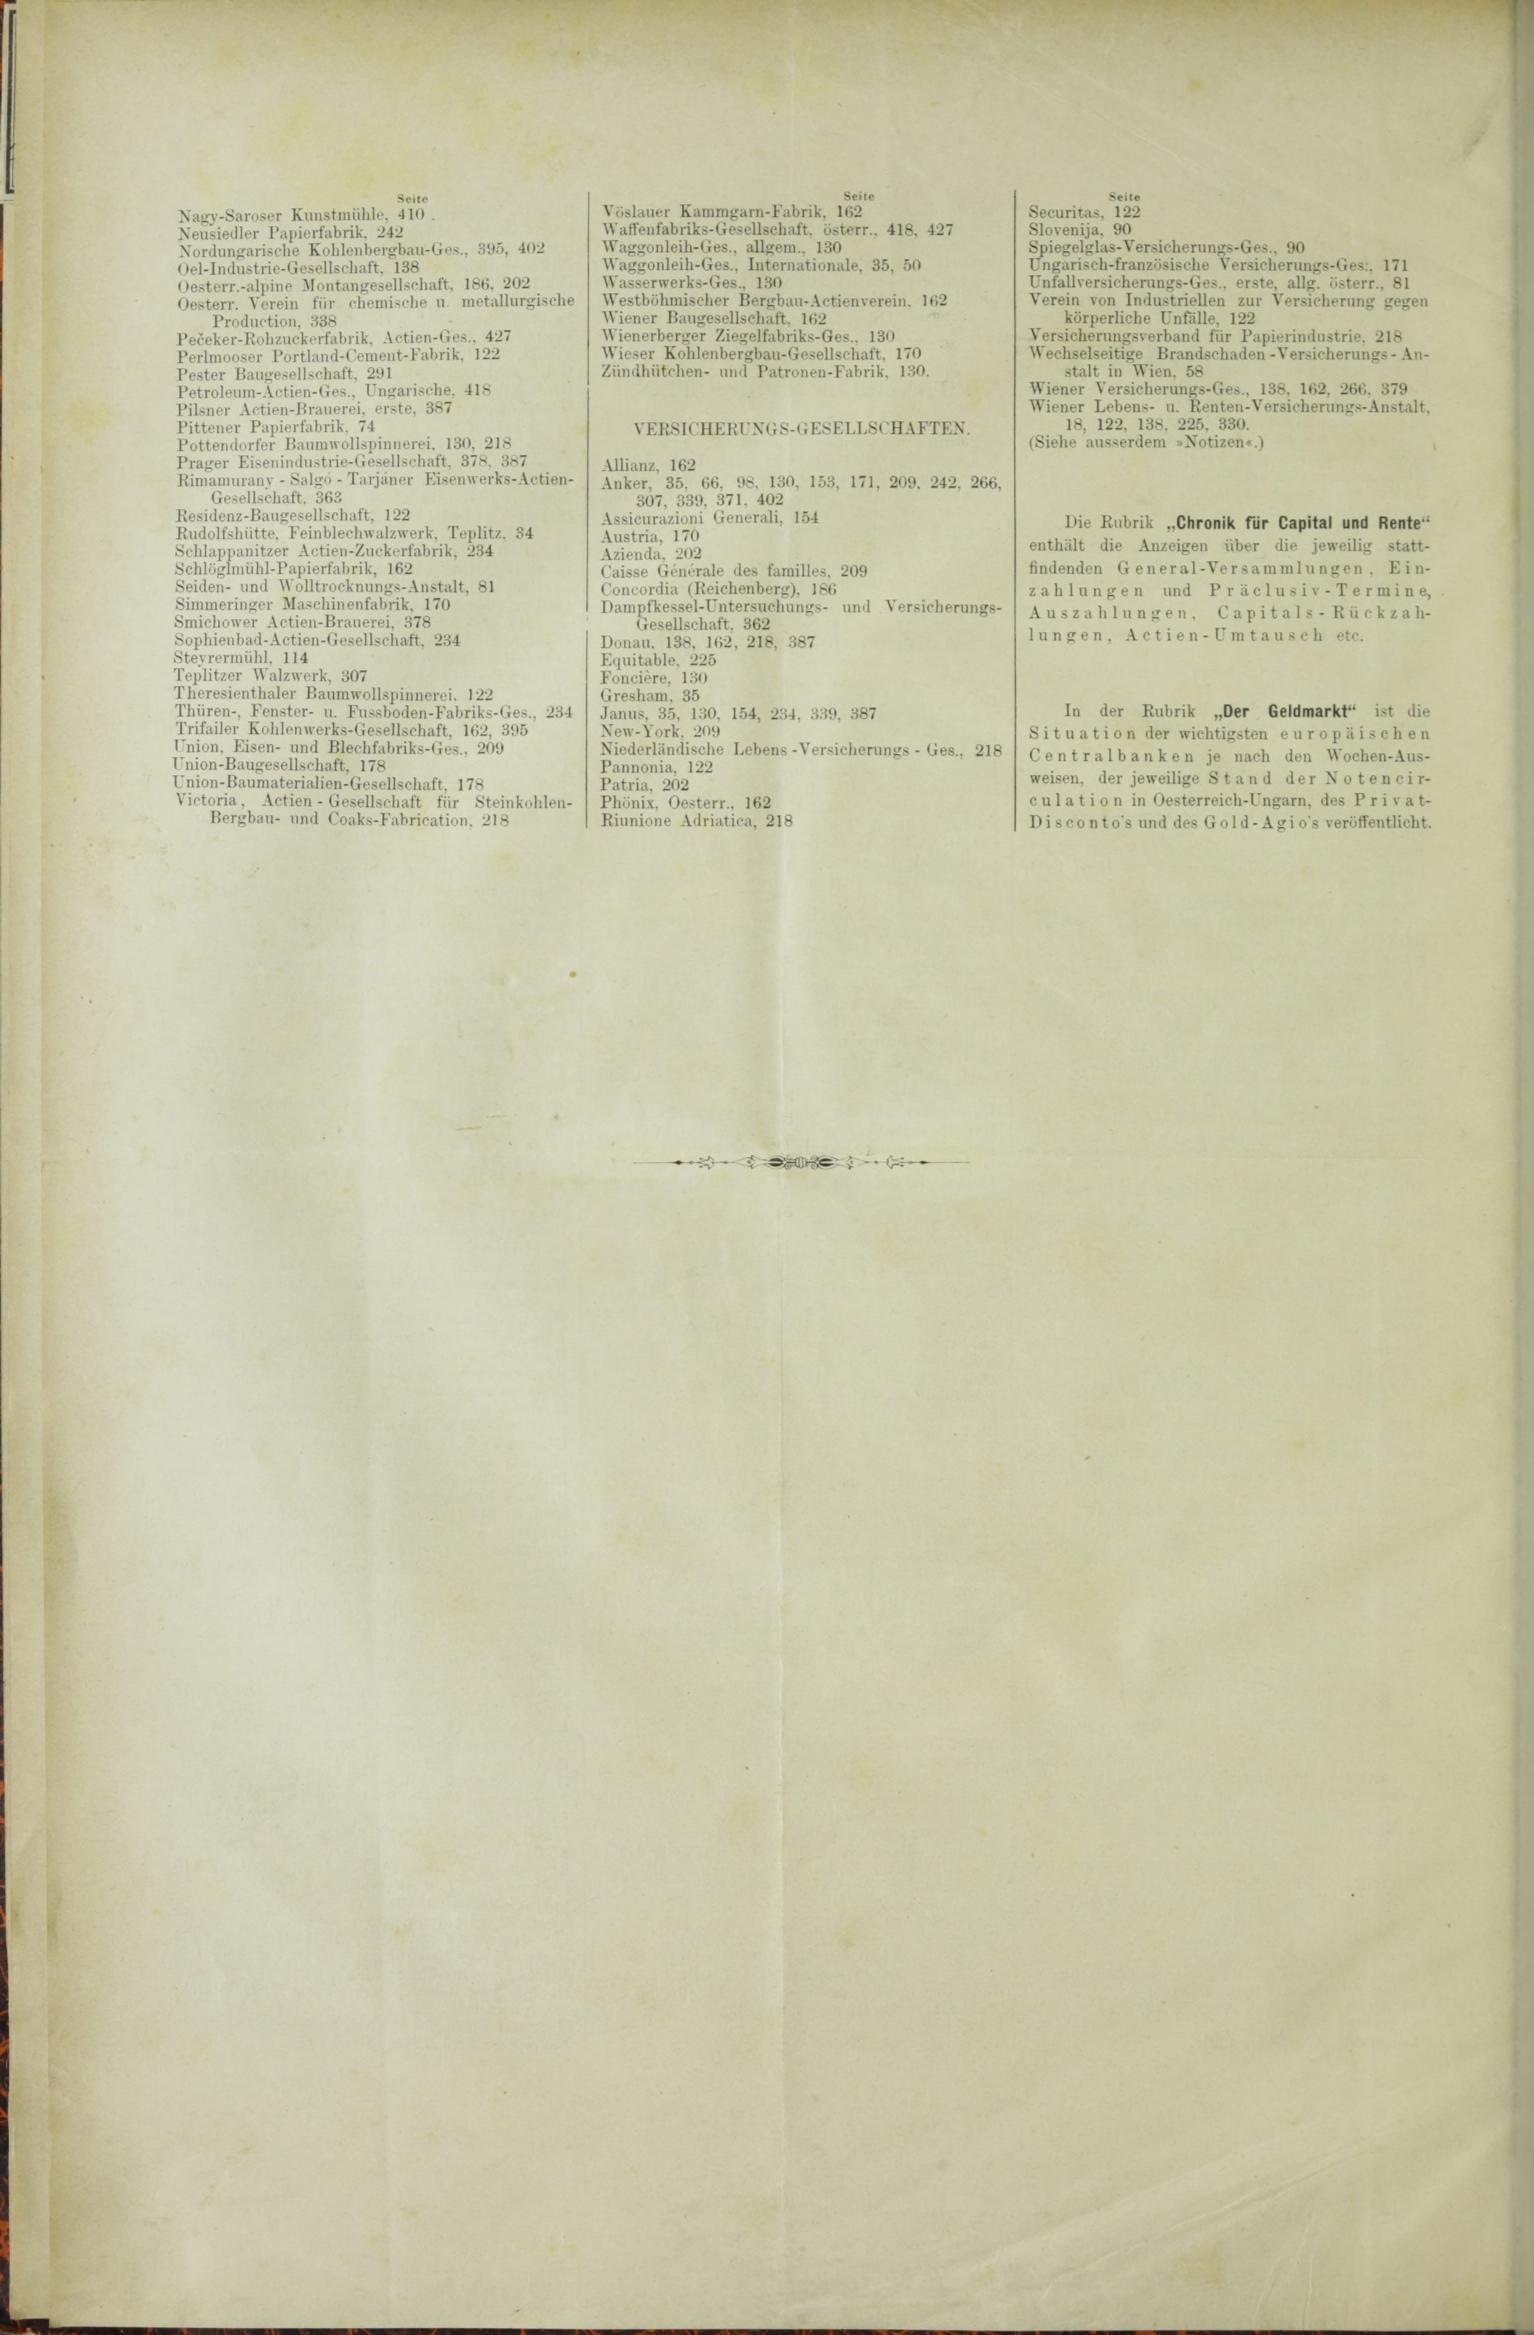 Der Tresor 25.06.1885 - Seite 12